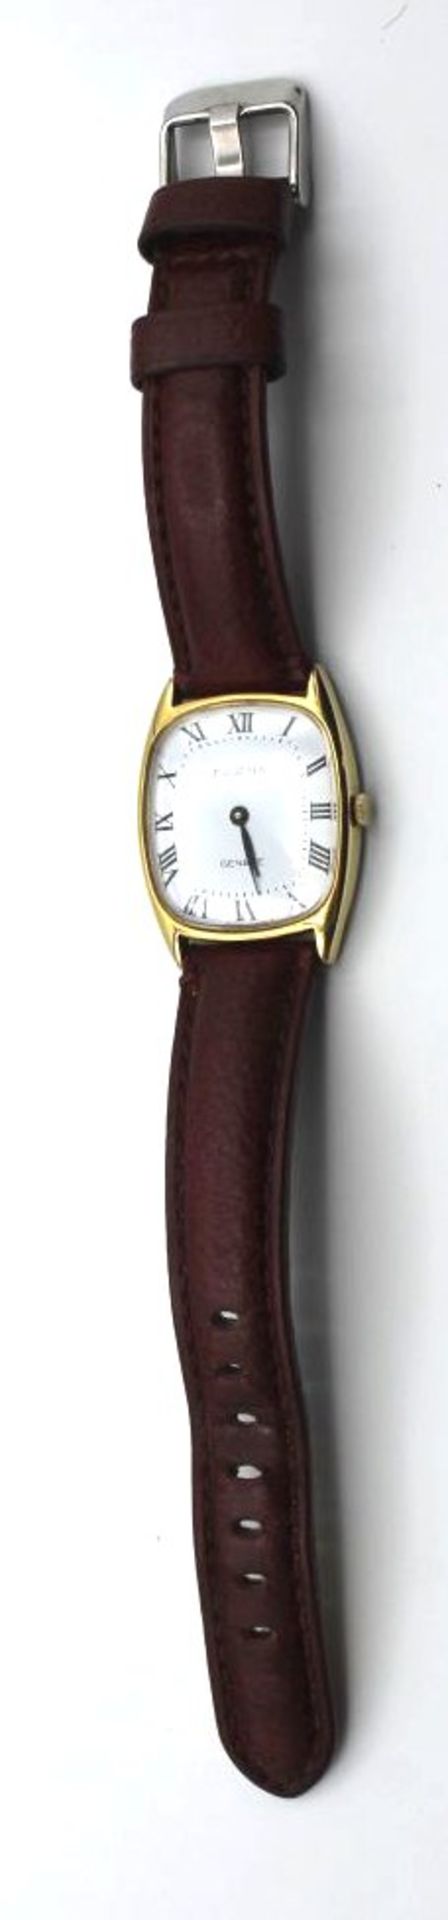 Damen-Armbanduhr, Dugena, Handaufzug, Werk läuft, leichte Tragespuren, 4 x 2,8cm. - Bild 3 aus 4